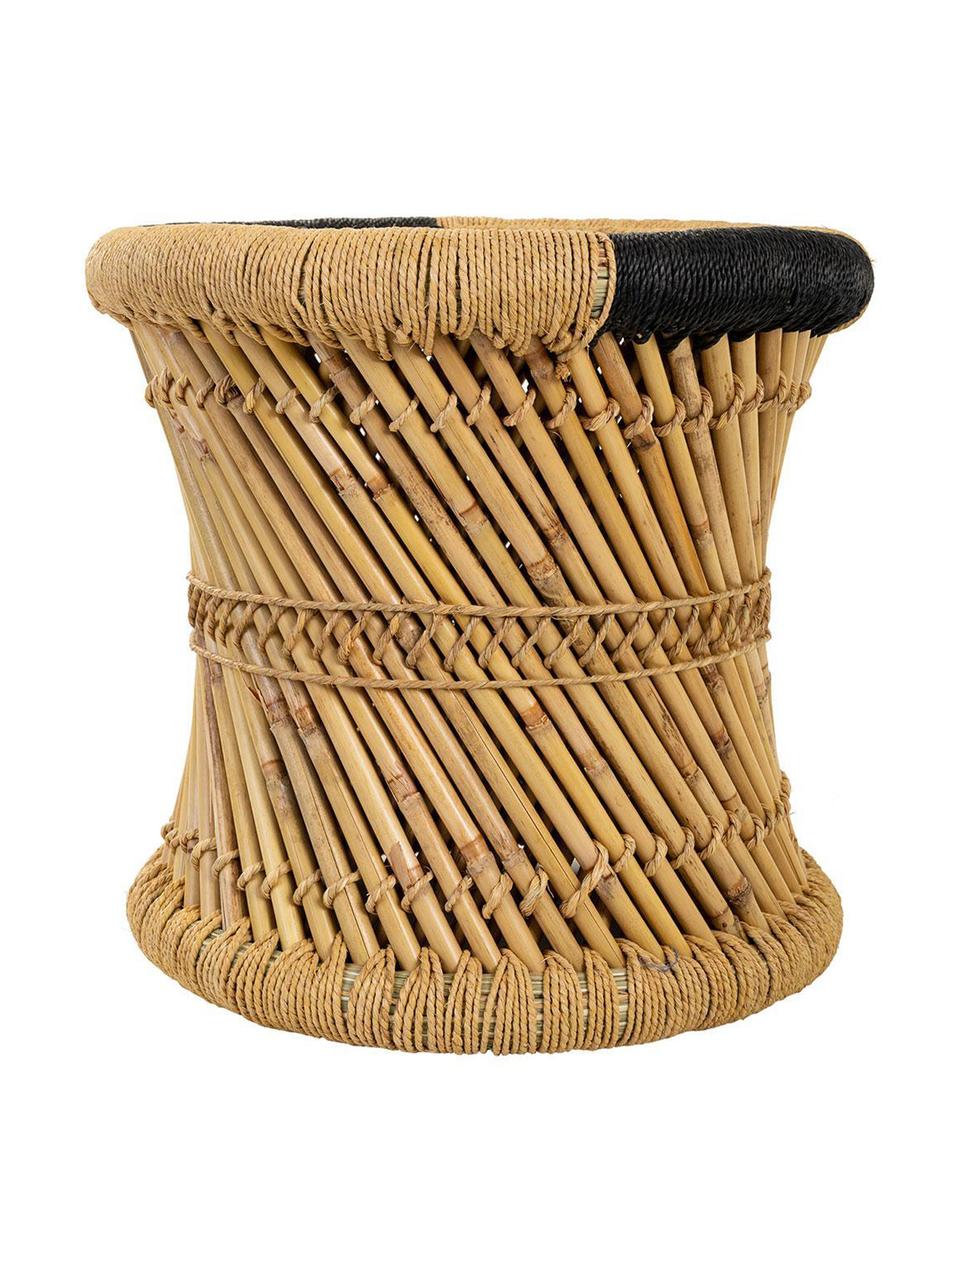 Set de taburetes de exterior Ariadna, 2 pzas., Cuerda, bambú, Beige, negro, Set de diferentes tamaños